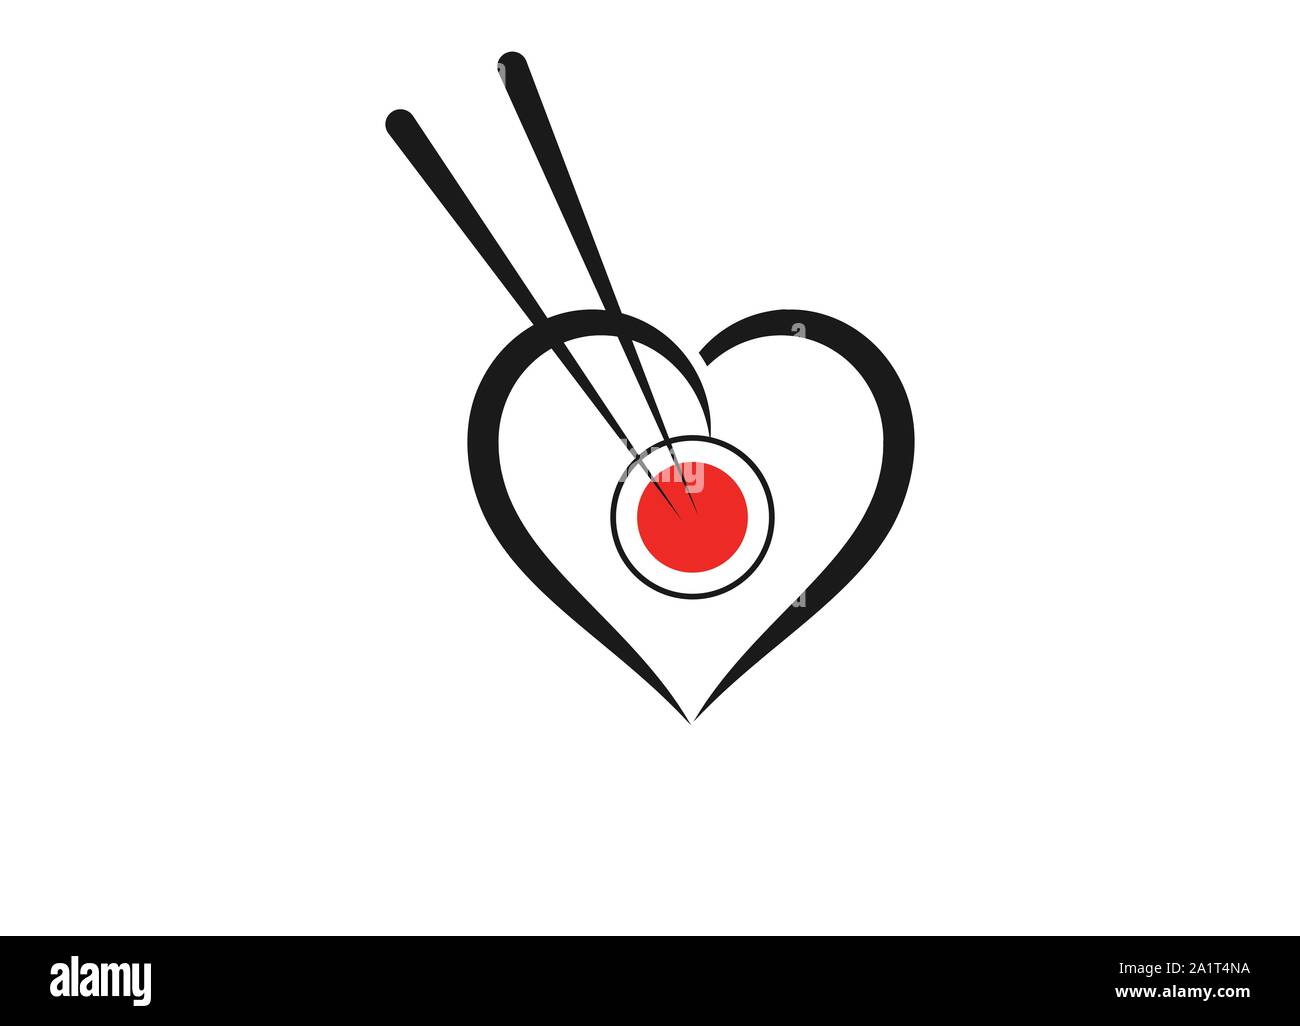 Oriental Japanisch Sushi Logo Design mit Liebe Zeichen inspiration, Vektor Icon Stil Abbildung: Logo der asiatischen Straße Fast Food Bar oder Shop, Sushi, Stock Vektor